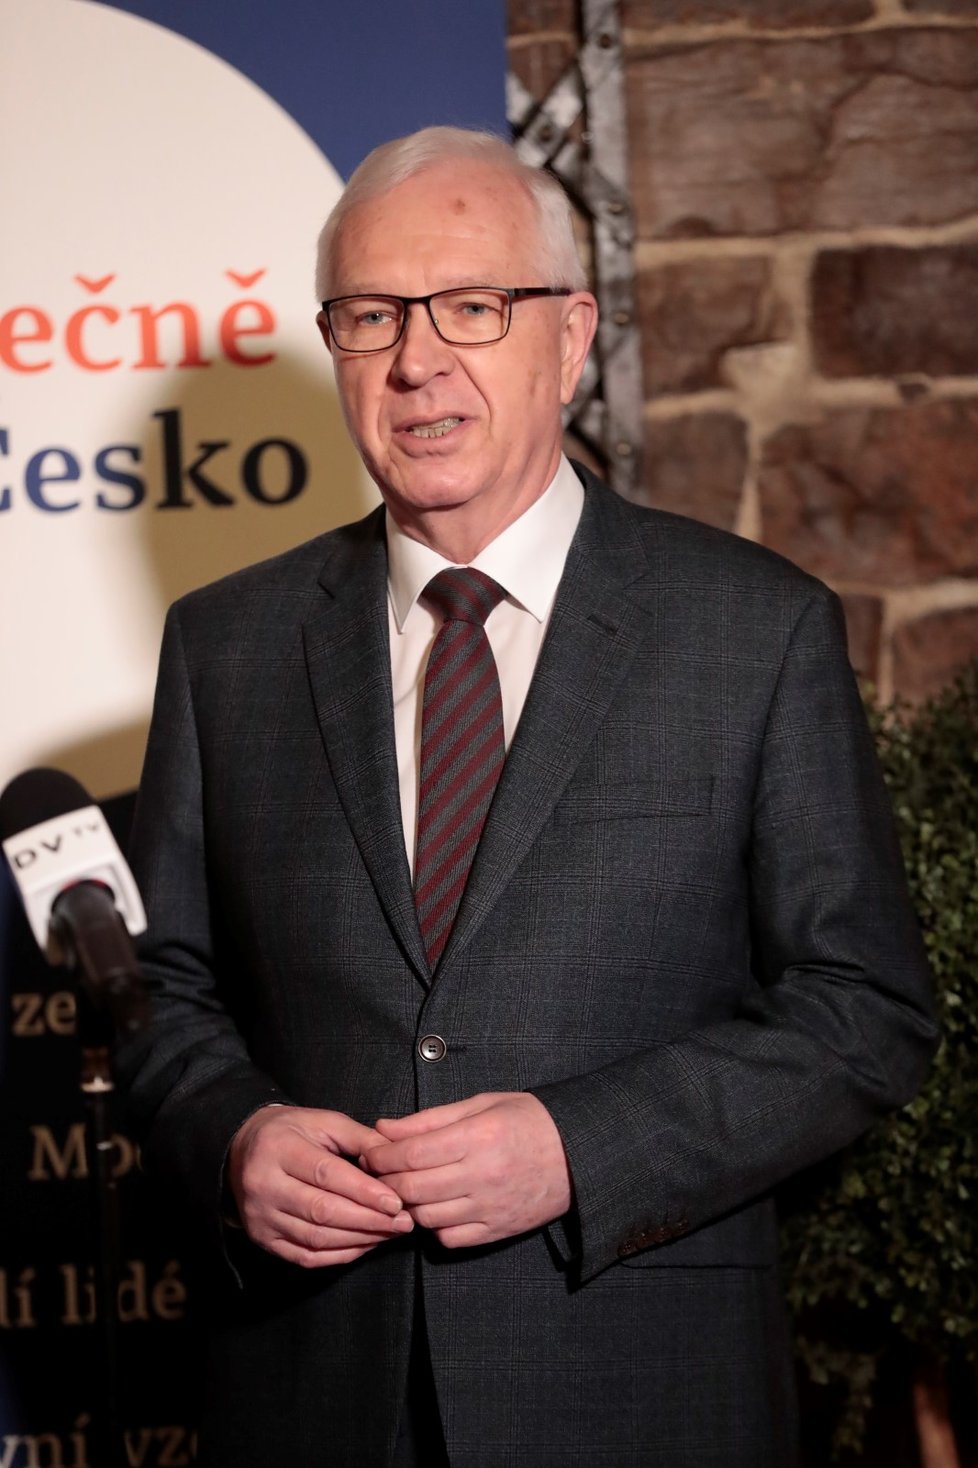 Neúspěšný prezidentský kandidát Jiří Drahoš na tiskové konferenci k dalším plánům v politice (20. 3. 2018)